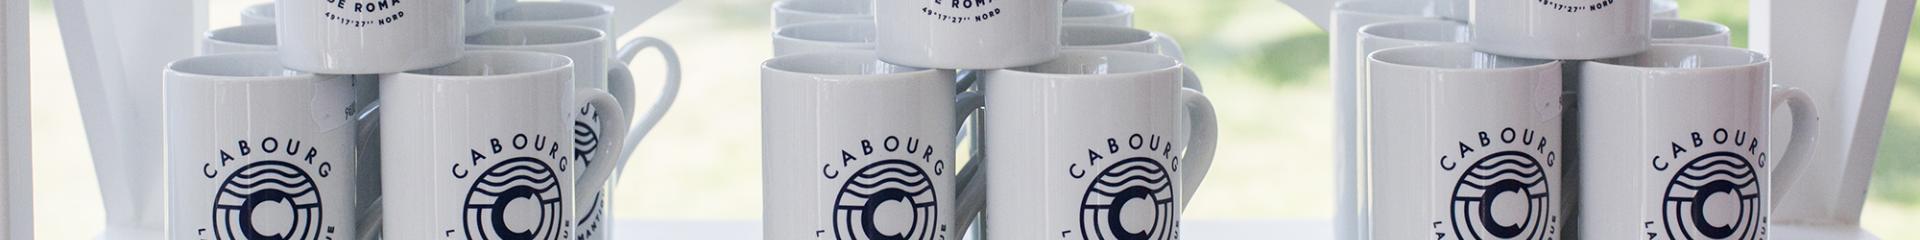 Boutique officielle de la marque Cabourg ©Focalizeyou